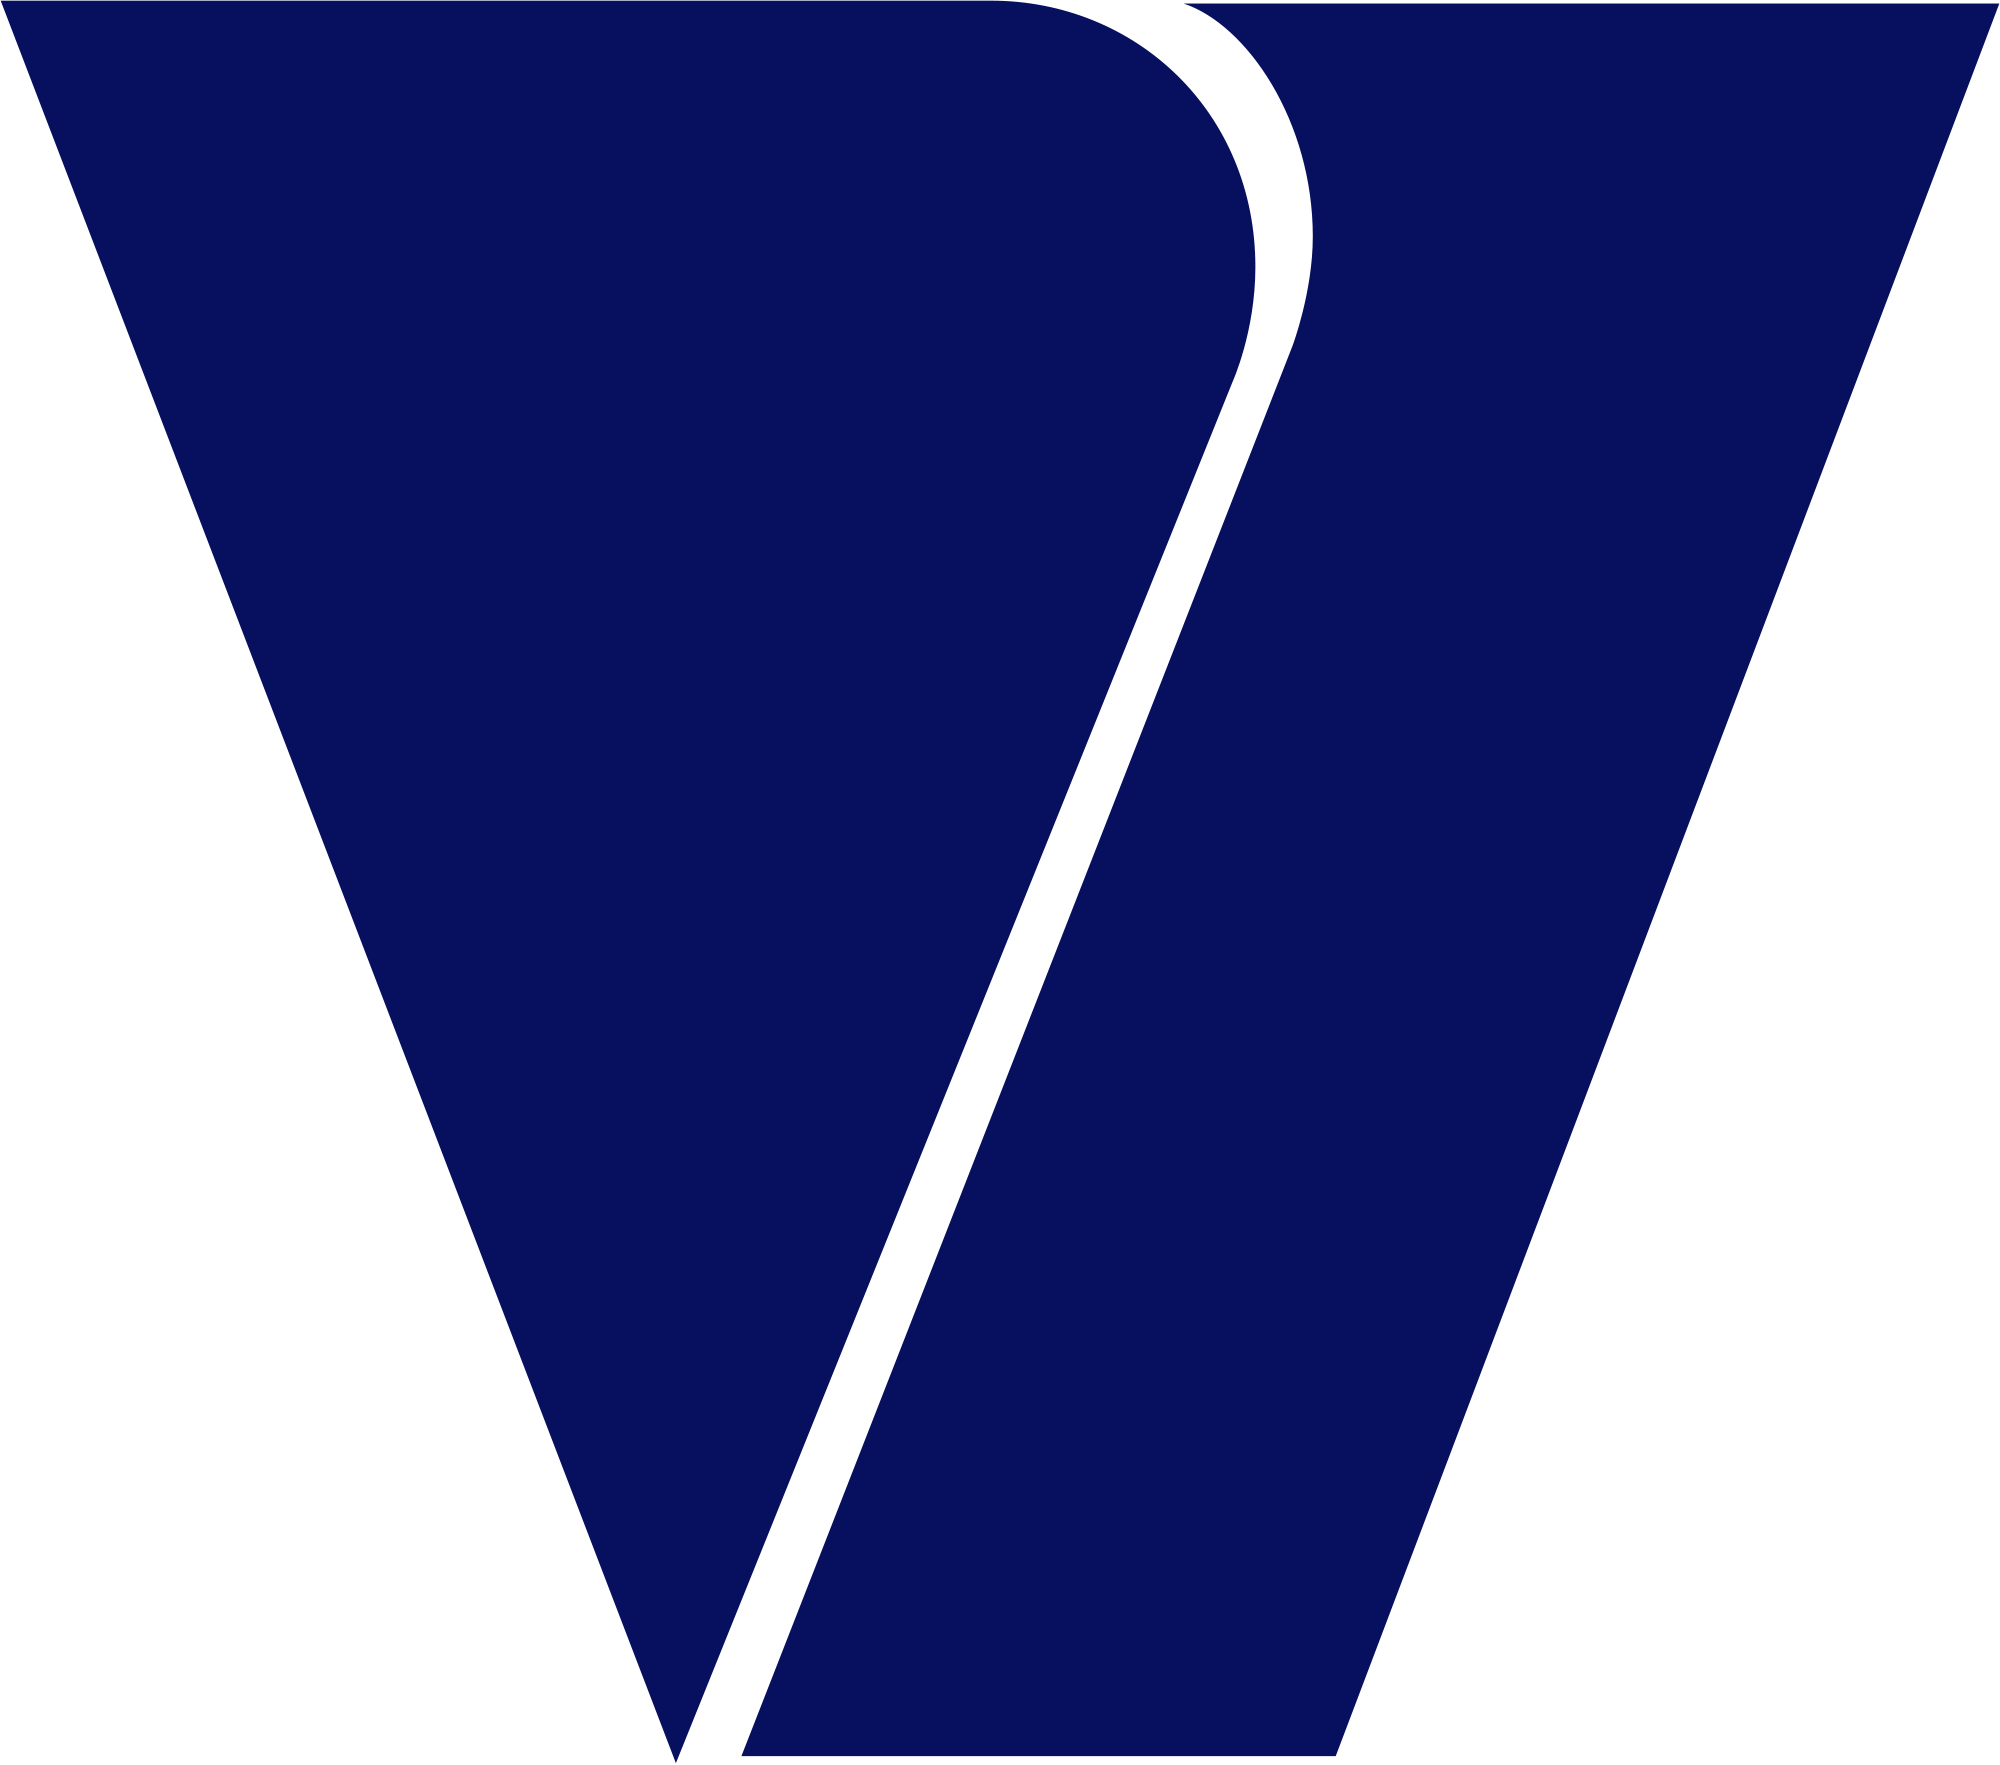 Viacom Logo - Image - Viacom Logo.png | Caillou tlt uolliaC Wiki | FANDOM powered ...